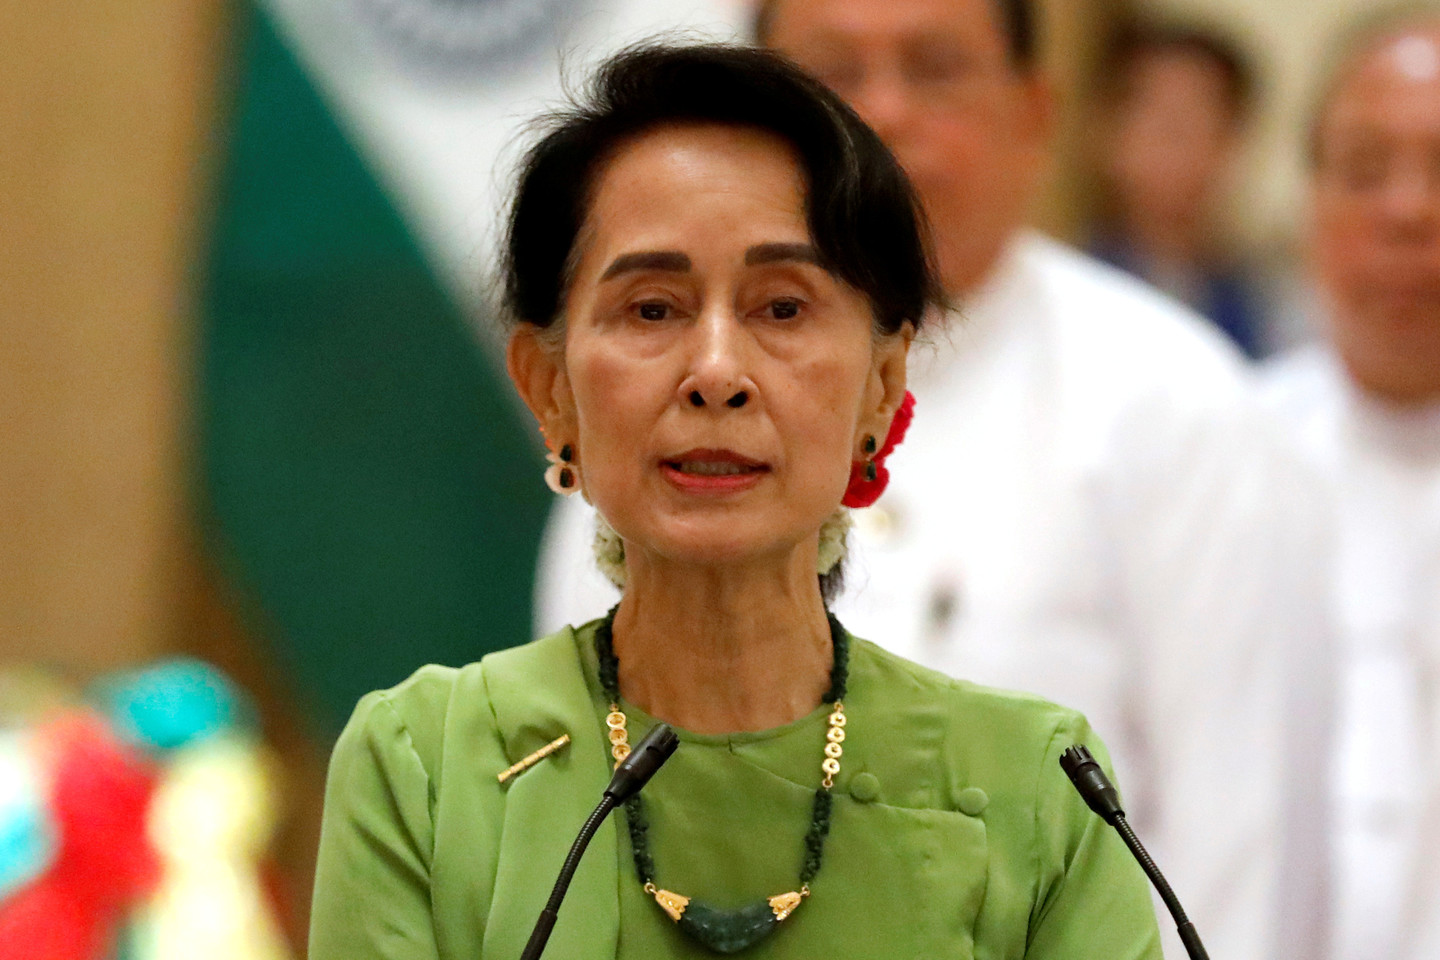  Europos Parlamentas primygtinai ragina Mianmaro vyriausybę ir, visų pirma, Aung San Suu Kyi, besąlygiškai pasmerkti bet kokį rasinės ar religinės neapykantos kurstymą.<br> Reuters/Scanpix nuotr. 